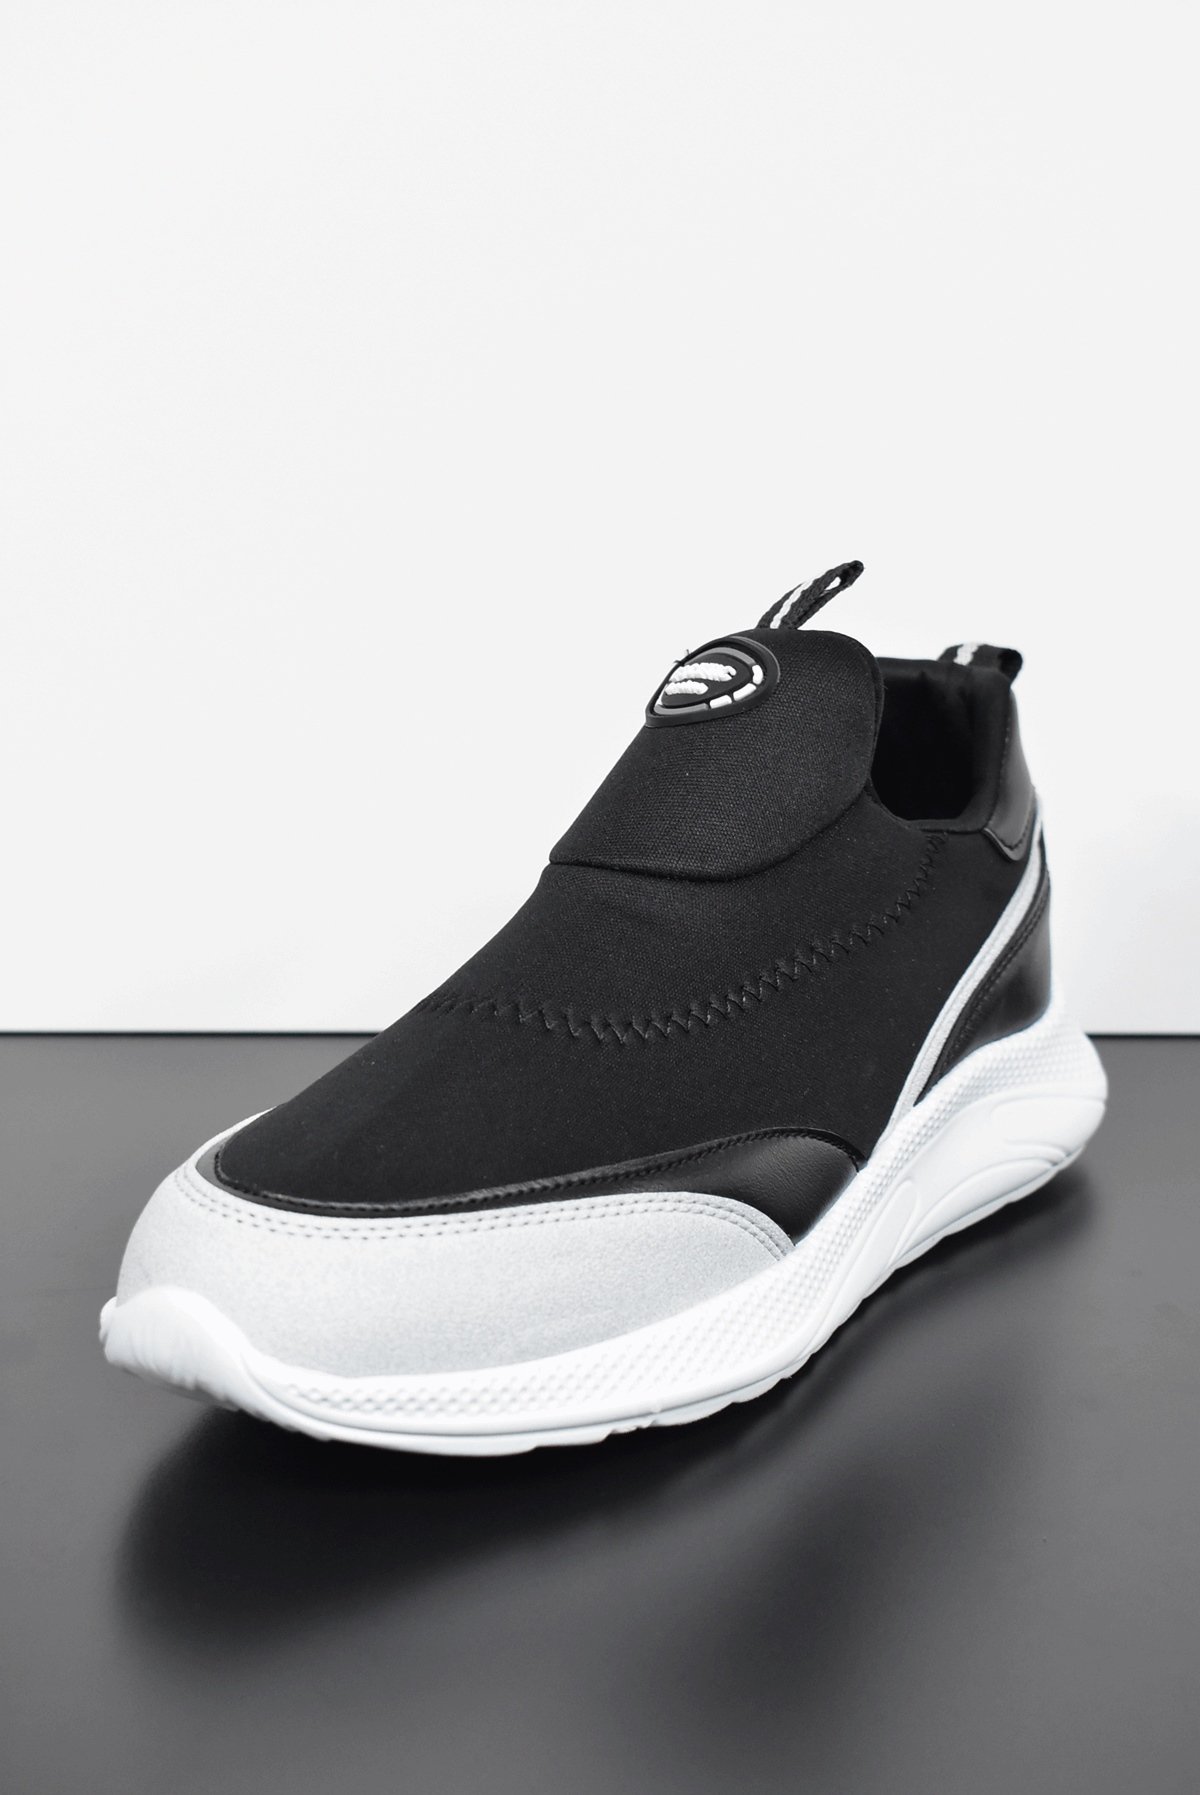 Escetic Erkek Siyah-Beyaz Sneaker Yumuşak Taban Bağcıksız Spor Ayakkabı  AY0003 - Escetic Sports